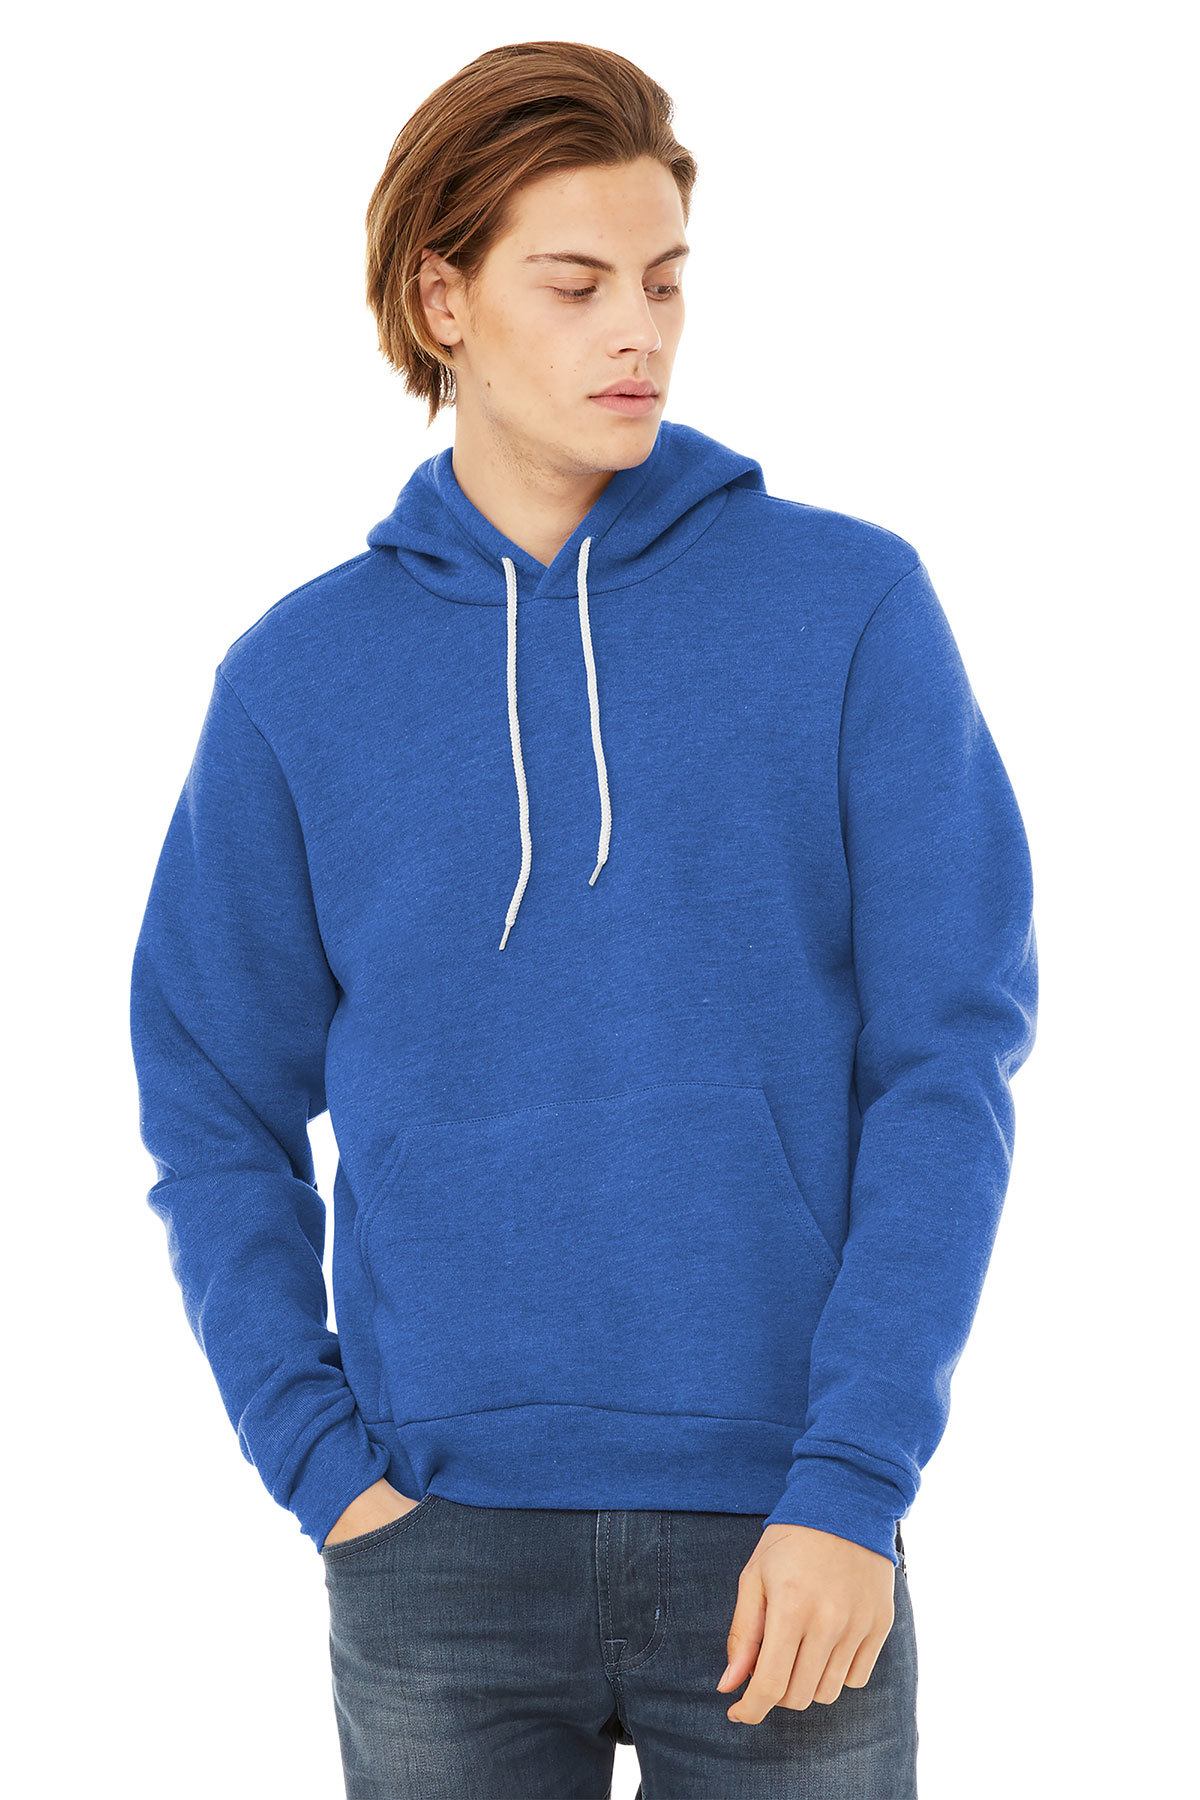 Custom Hoodie Pigment Dyed Soft Hooded Sweatshirt Long Sleeve Kangaroo Jacket Unisex Sponge Fleece Pullover Hoodie